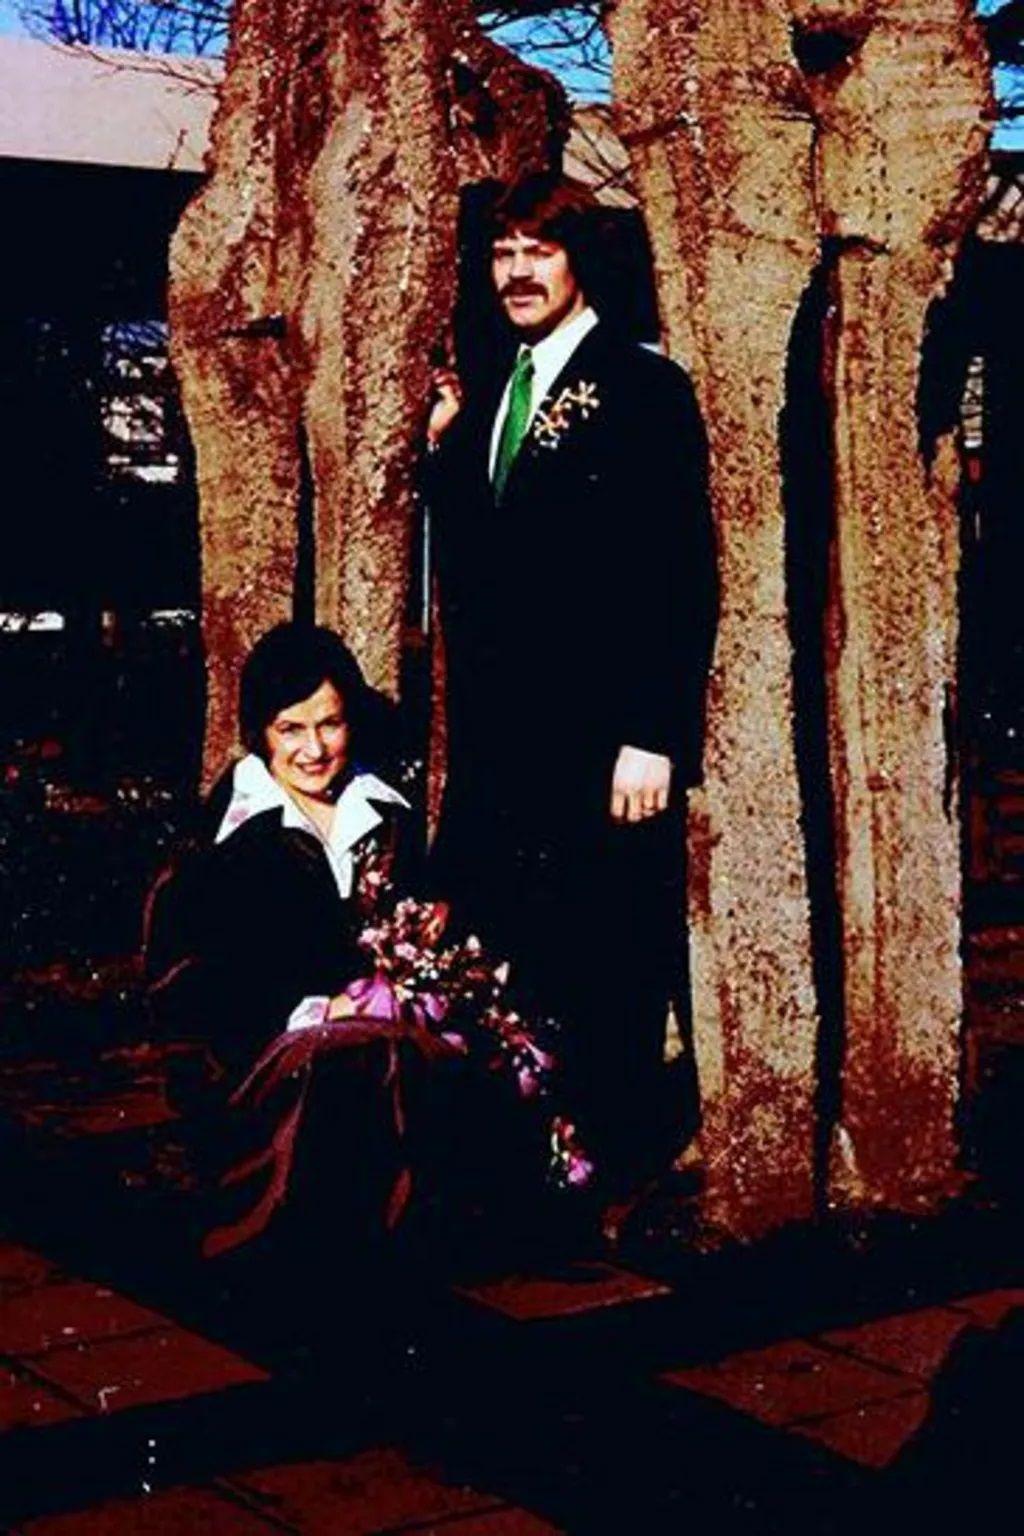 جان وإلس خلال حفل زفافهما عام 1975